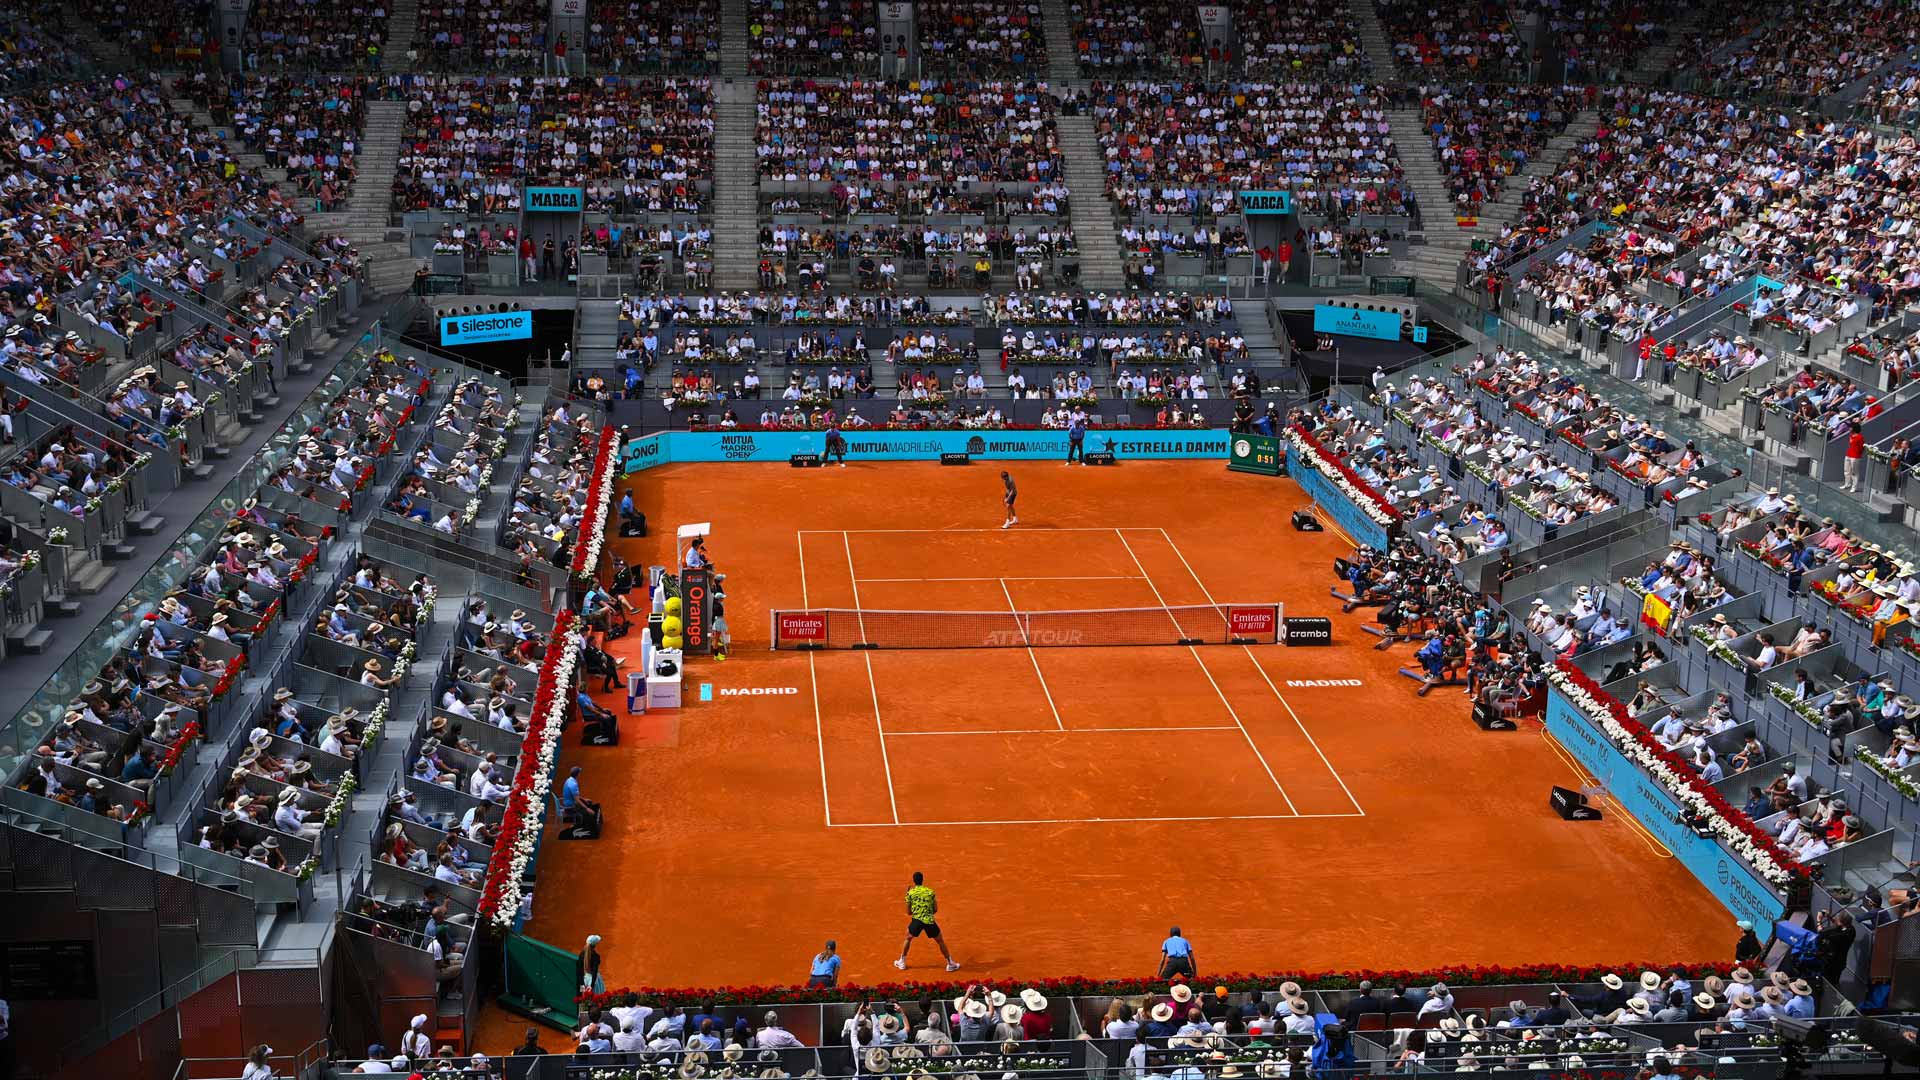 Comienza el Masters 1000 de Madrid: todo lo que tenés que saber | Canal Showsport